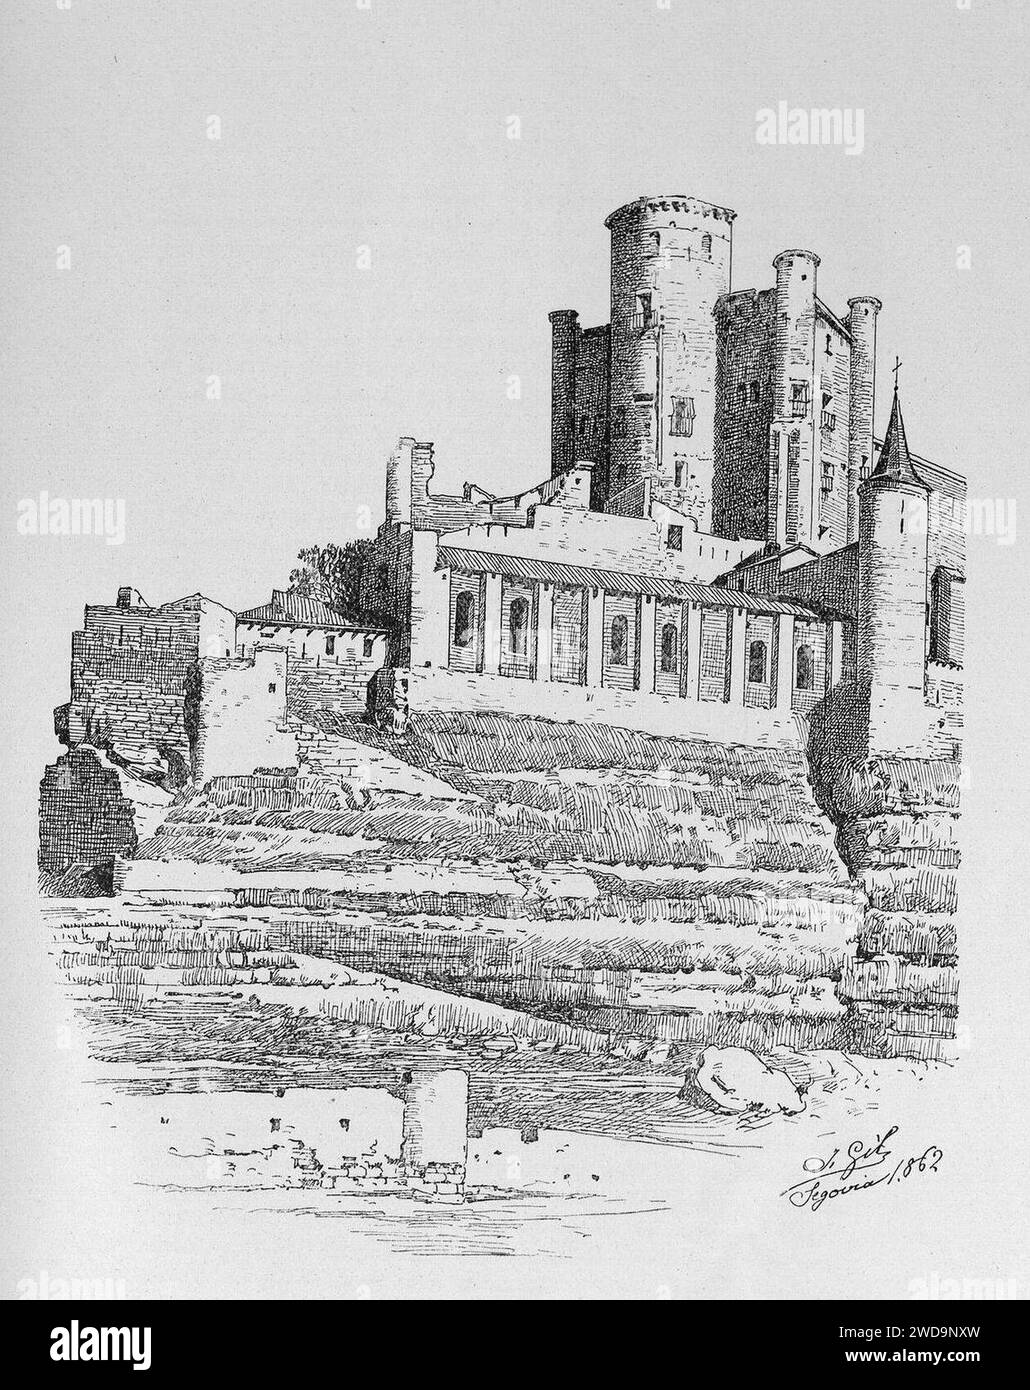 1905, El castillo de Loarre y el alcázar de Segovia, Alcázar de Segovia, La torre del homenaje después del incendio de 1862 (cropped). Stock Photo